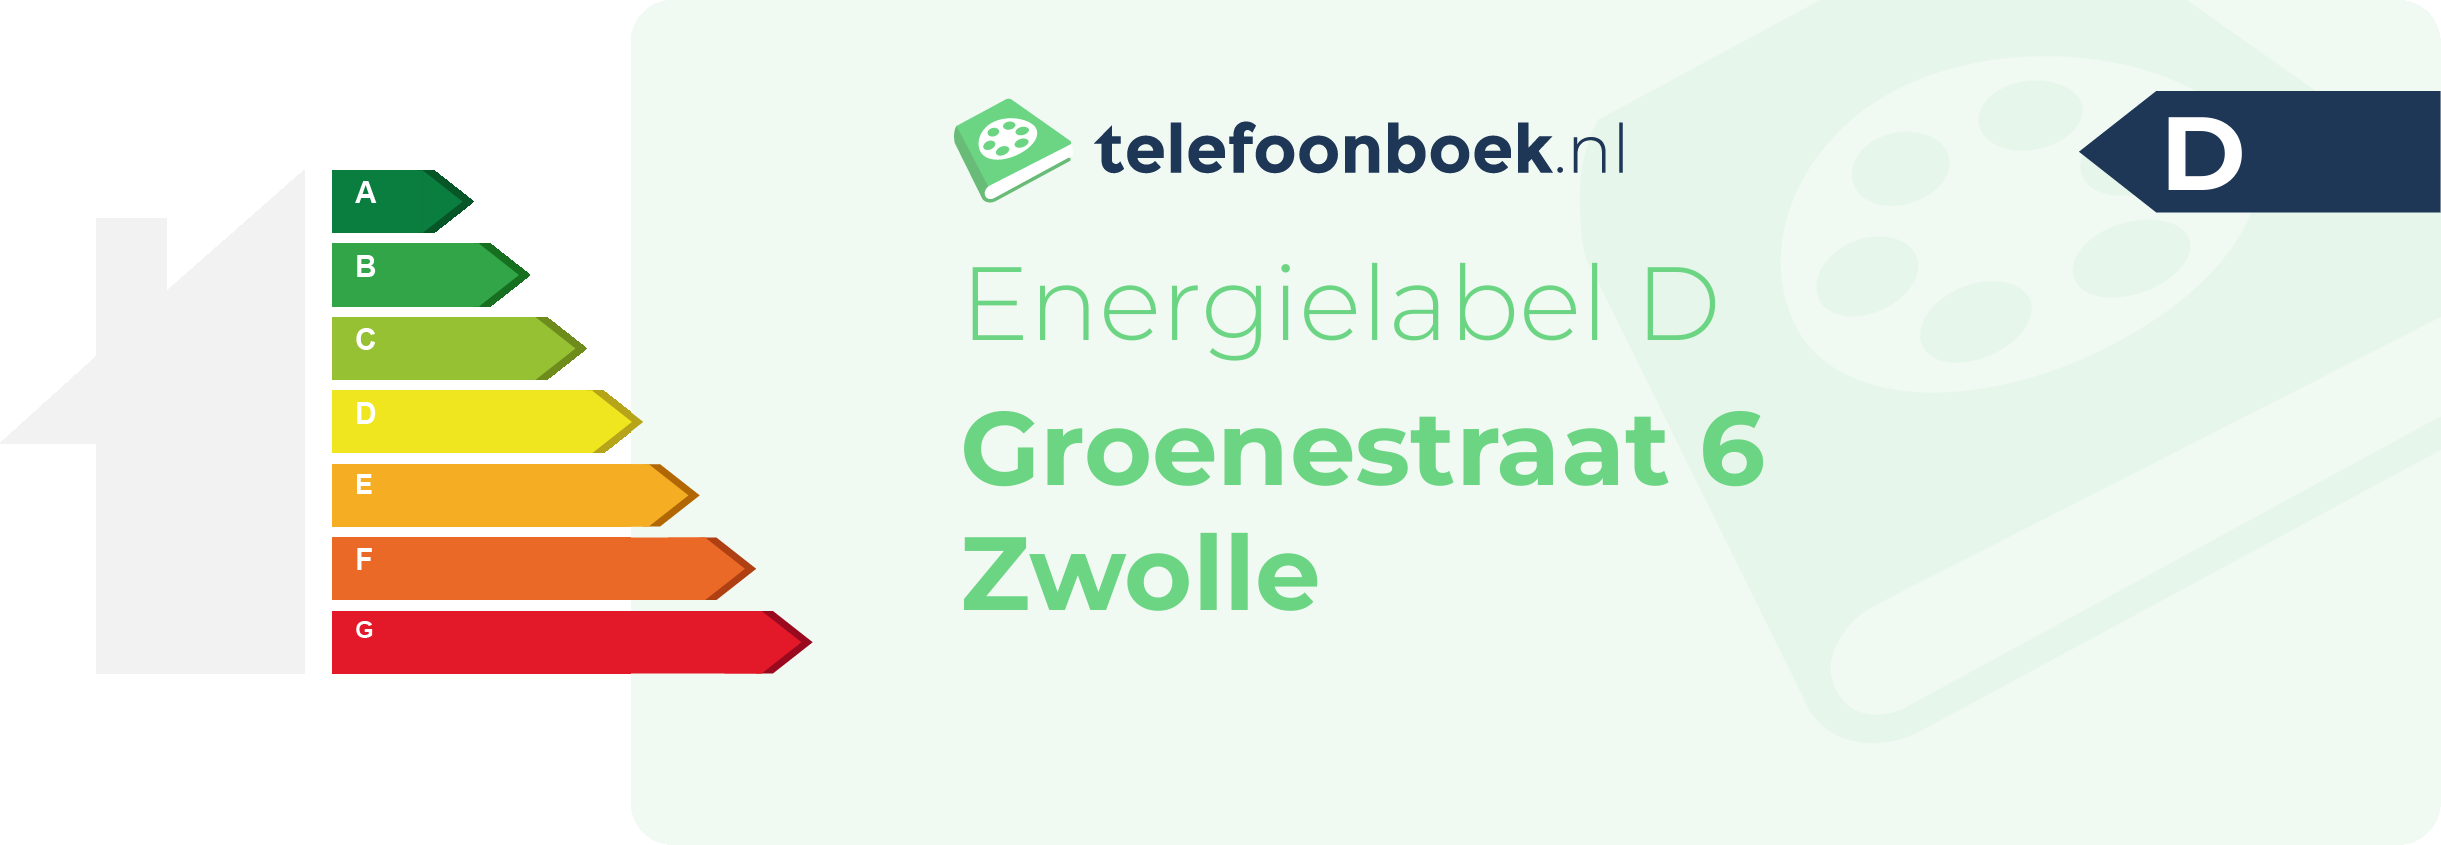 Energielabel Groenestraat 6 Zwolle